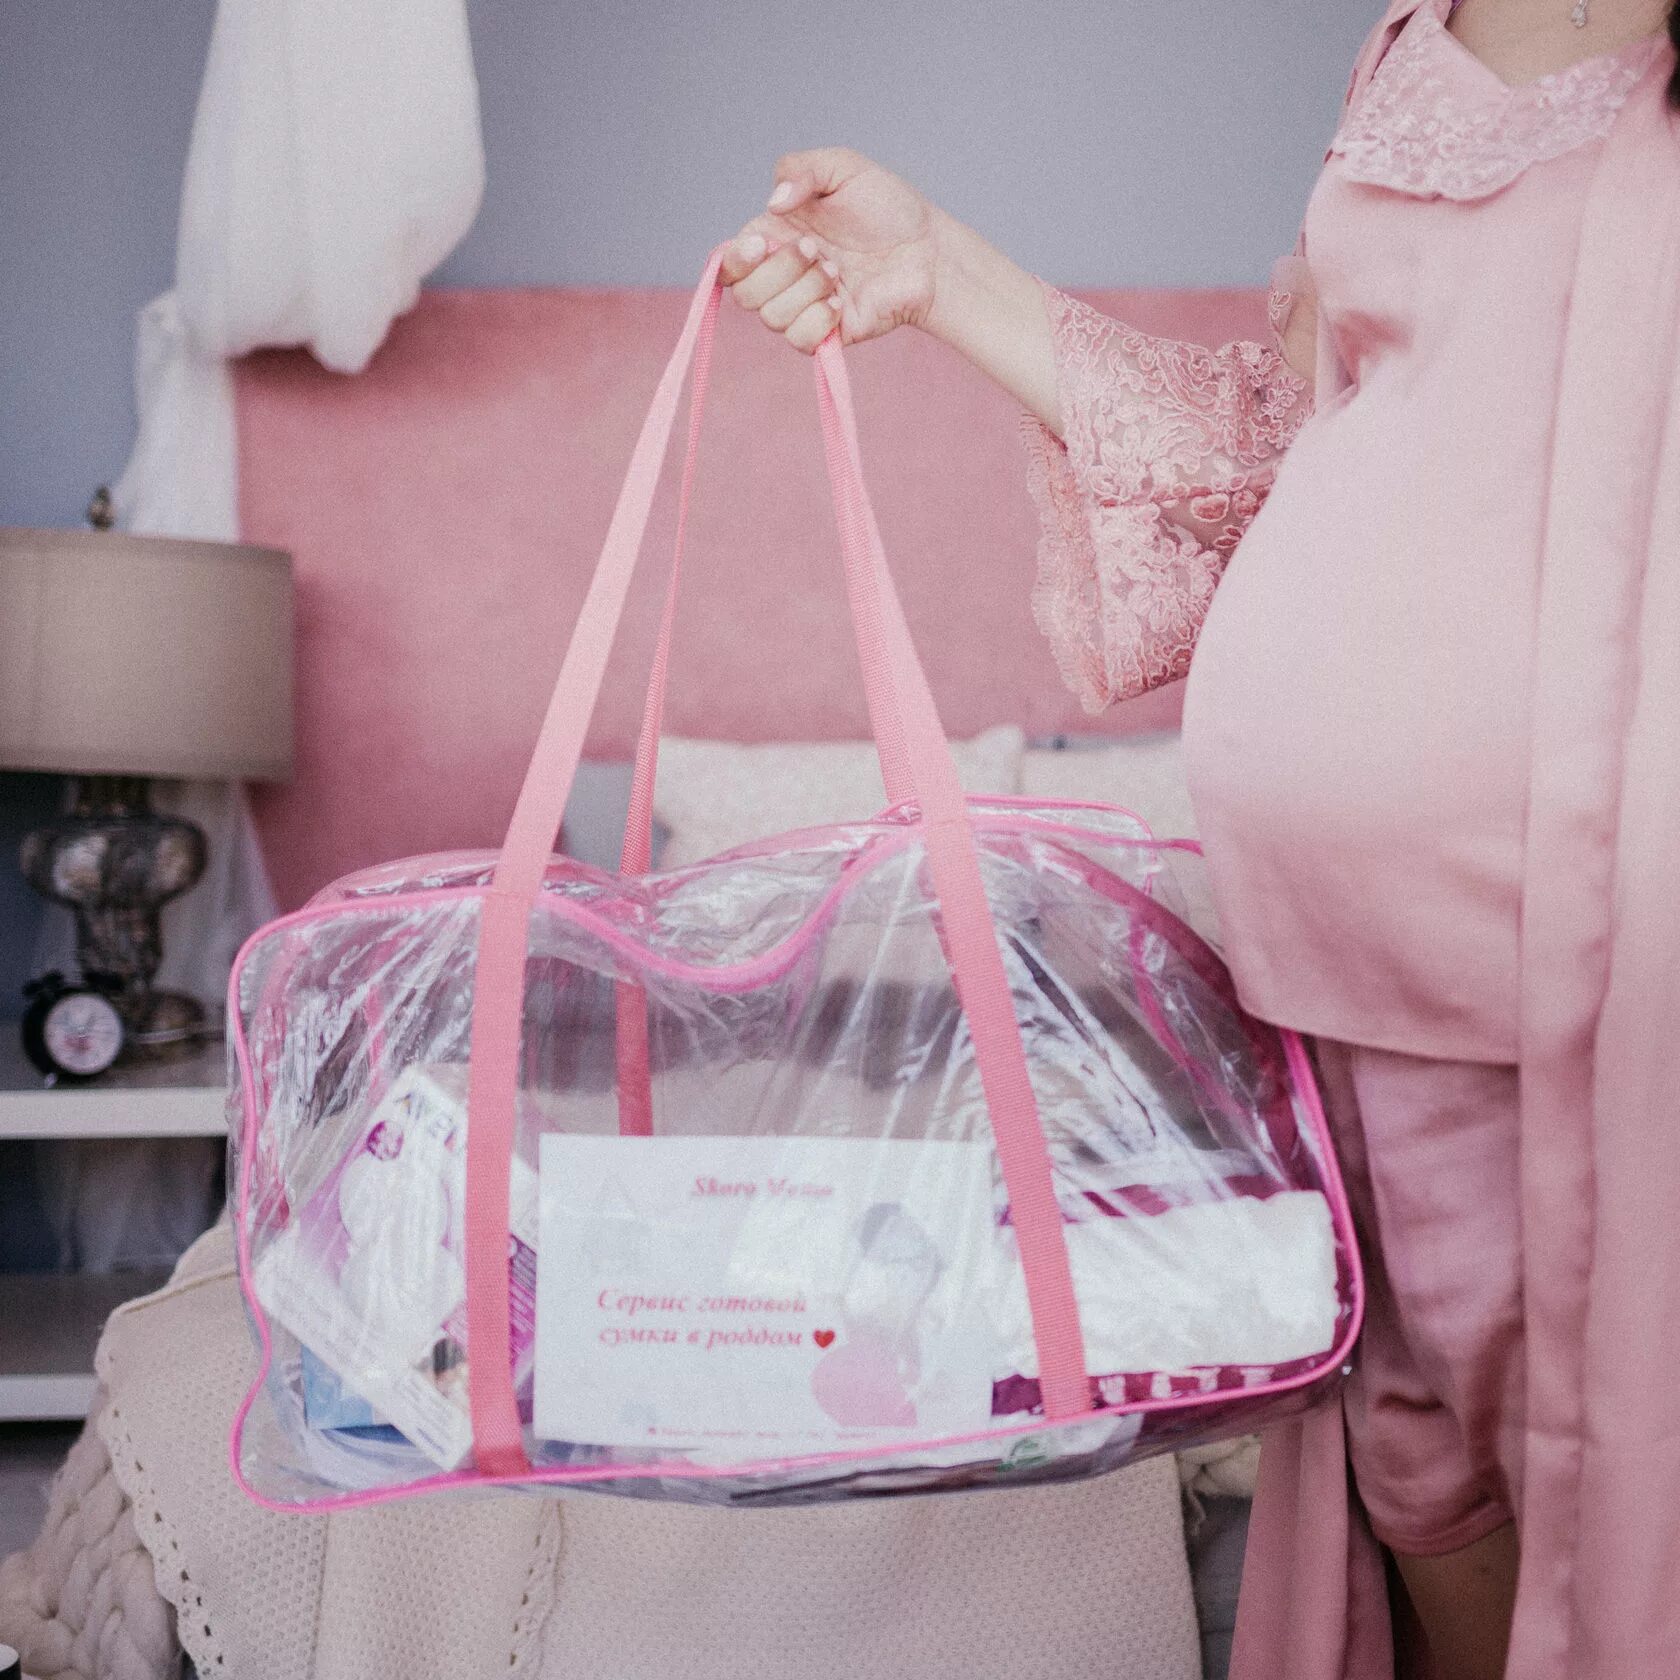 Какая сумка нужна в роддом. Сумка в роддом. Красивые сумки в роддом. Сумка для родов. Сумка для беременных в роддом.